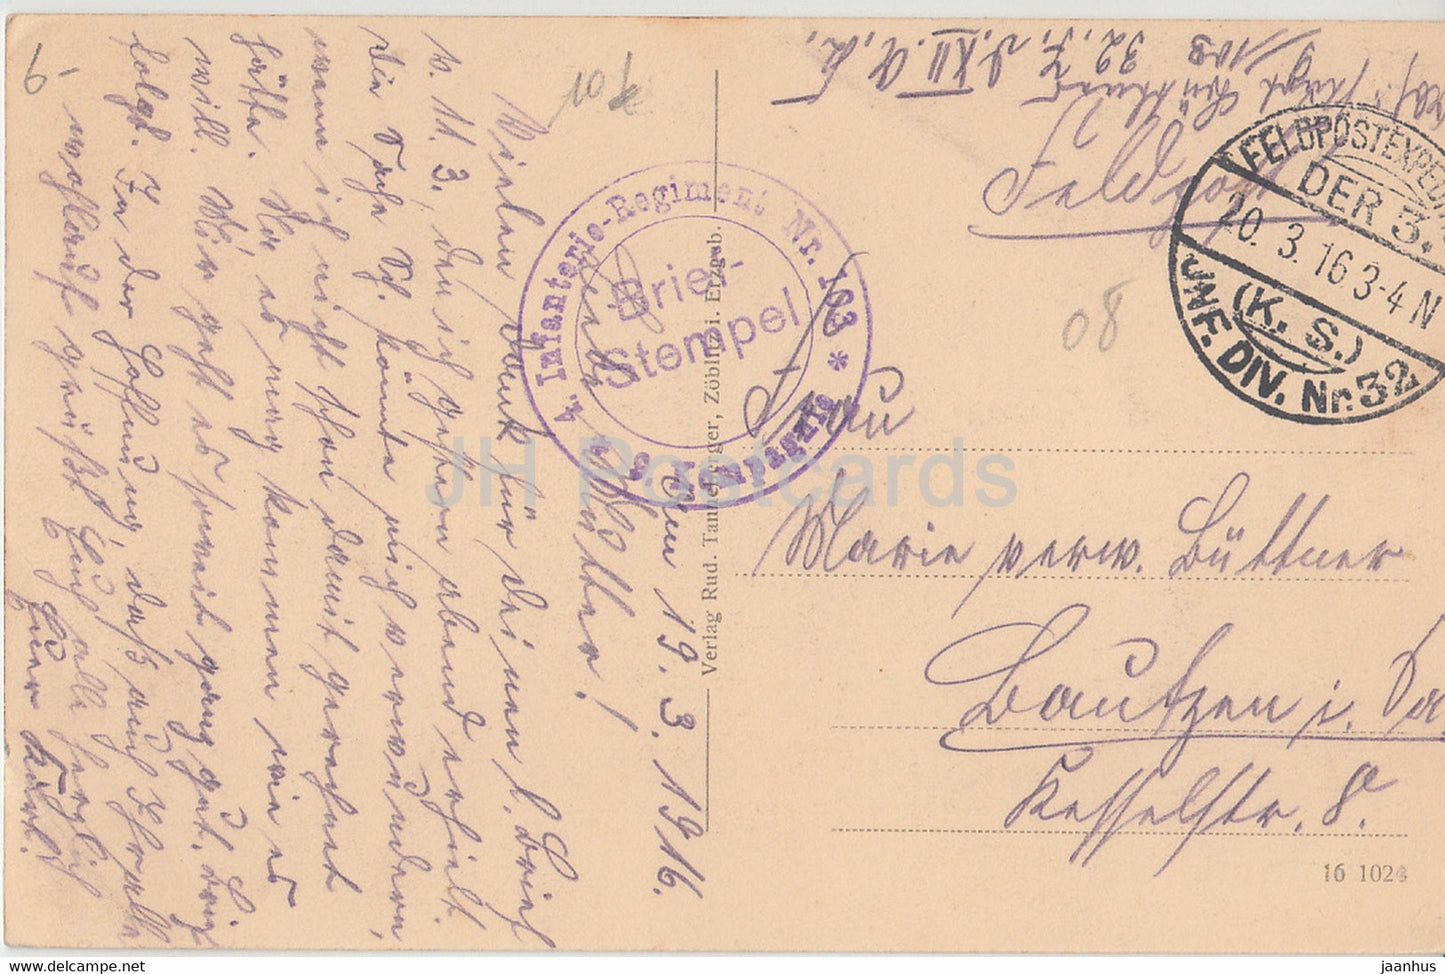 Rethel - Infanterie Regiment Nr. 103 - Feldpost - Militär - alte Postkarte - 1916 - Frankreich - gebraucht